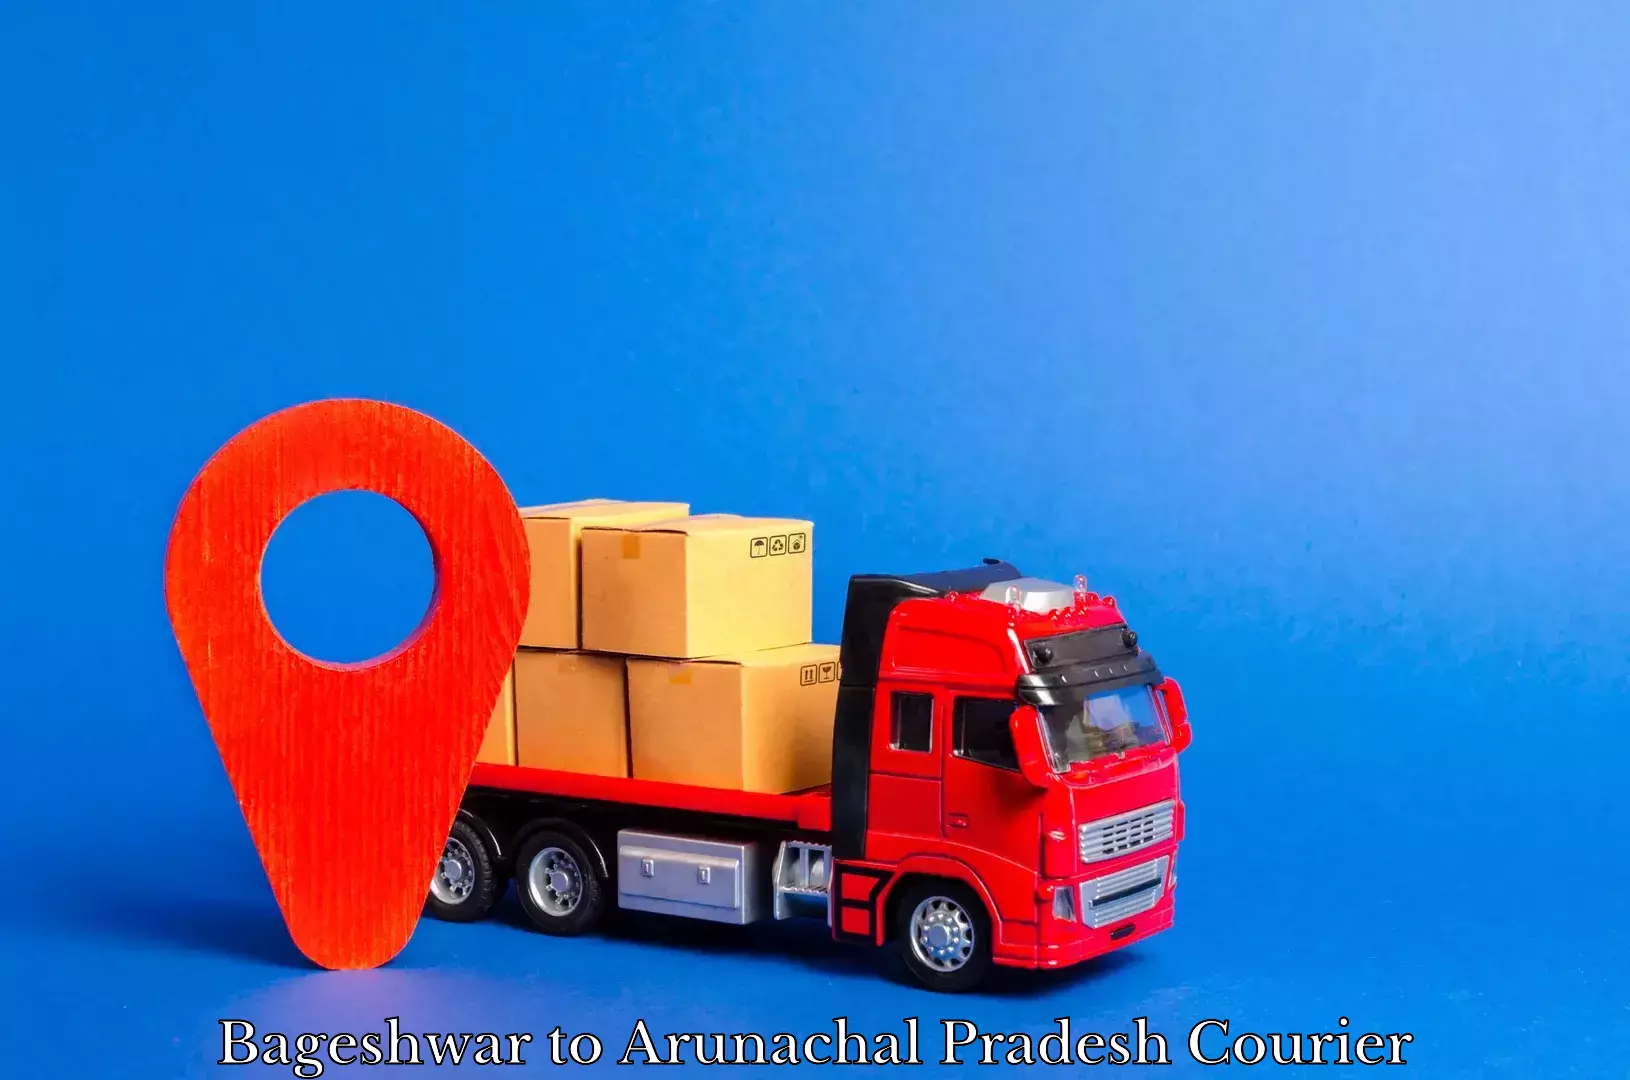 Professional courier handling Bageshwar to Arunachal Pradesh